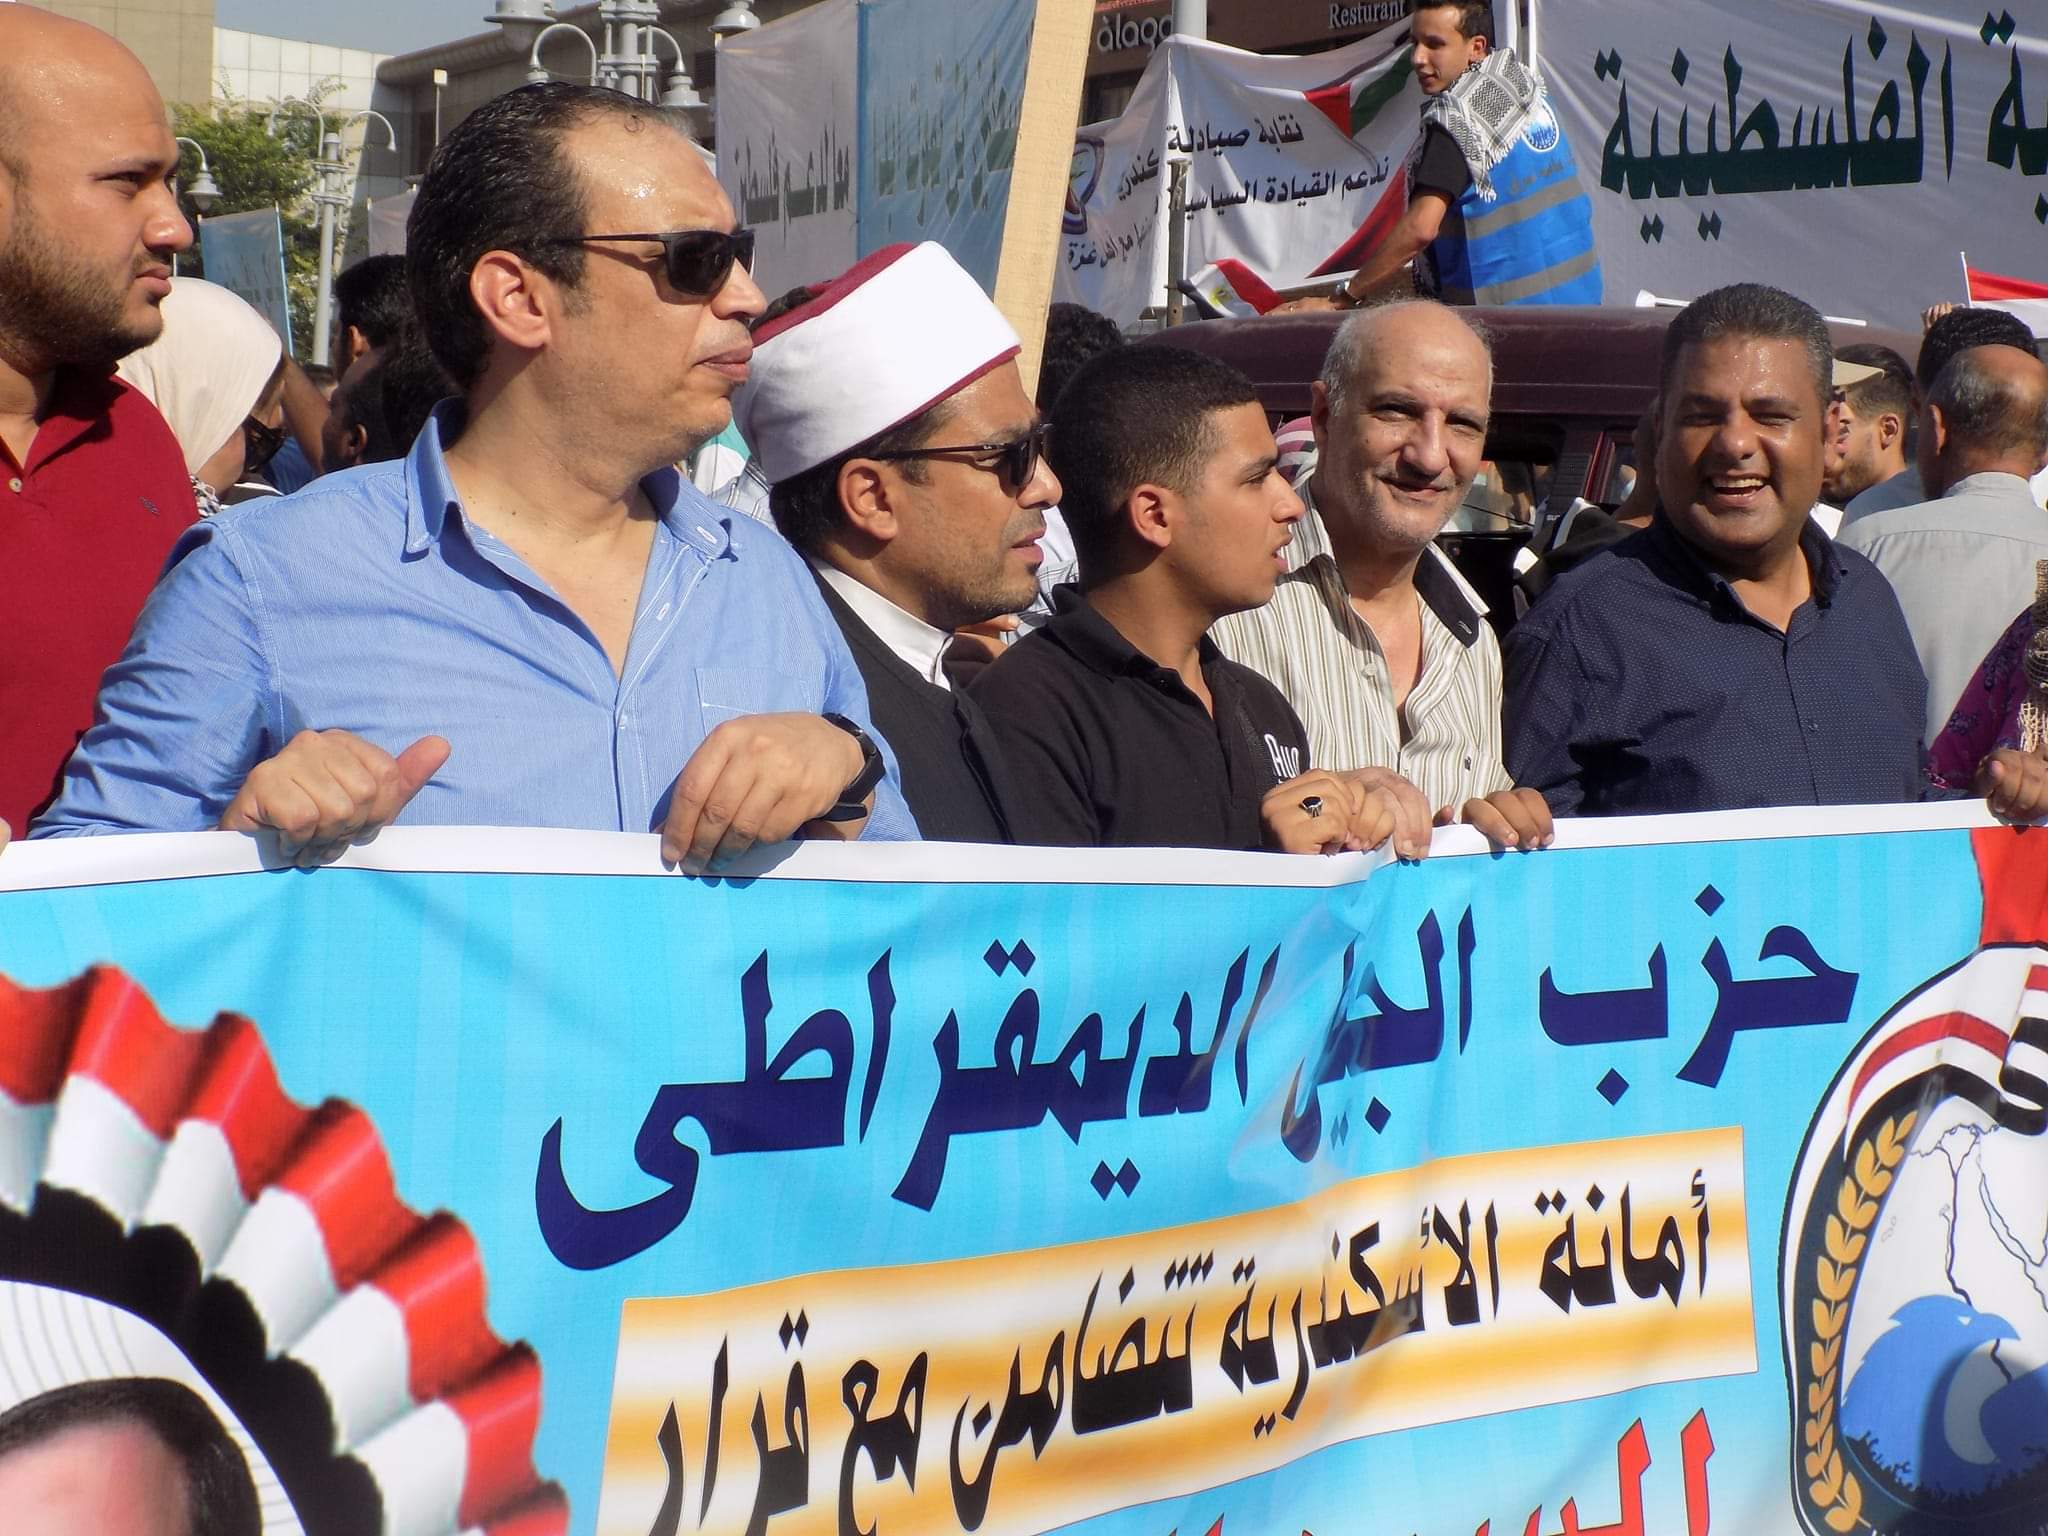 حزب الجيل يحشد أعضائه لدعم القضية الفلسطينية وقرارات السيسي بالإسكندرية